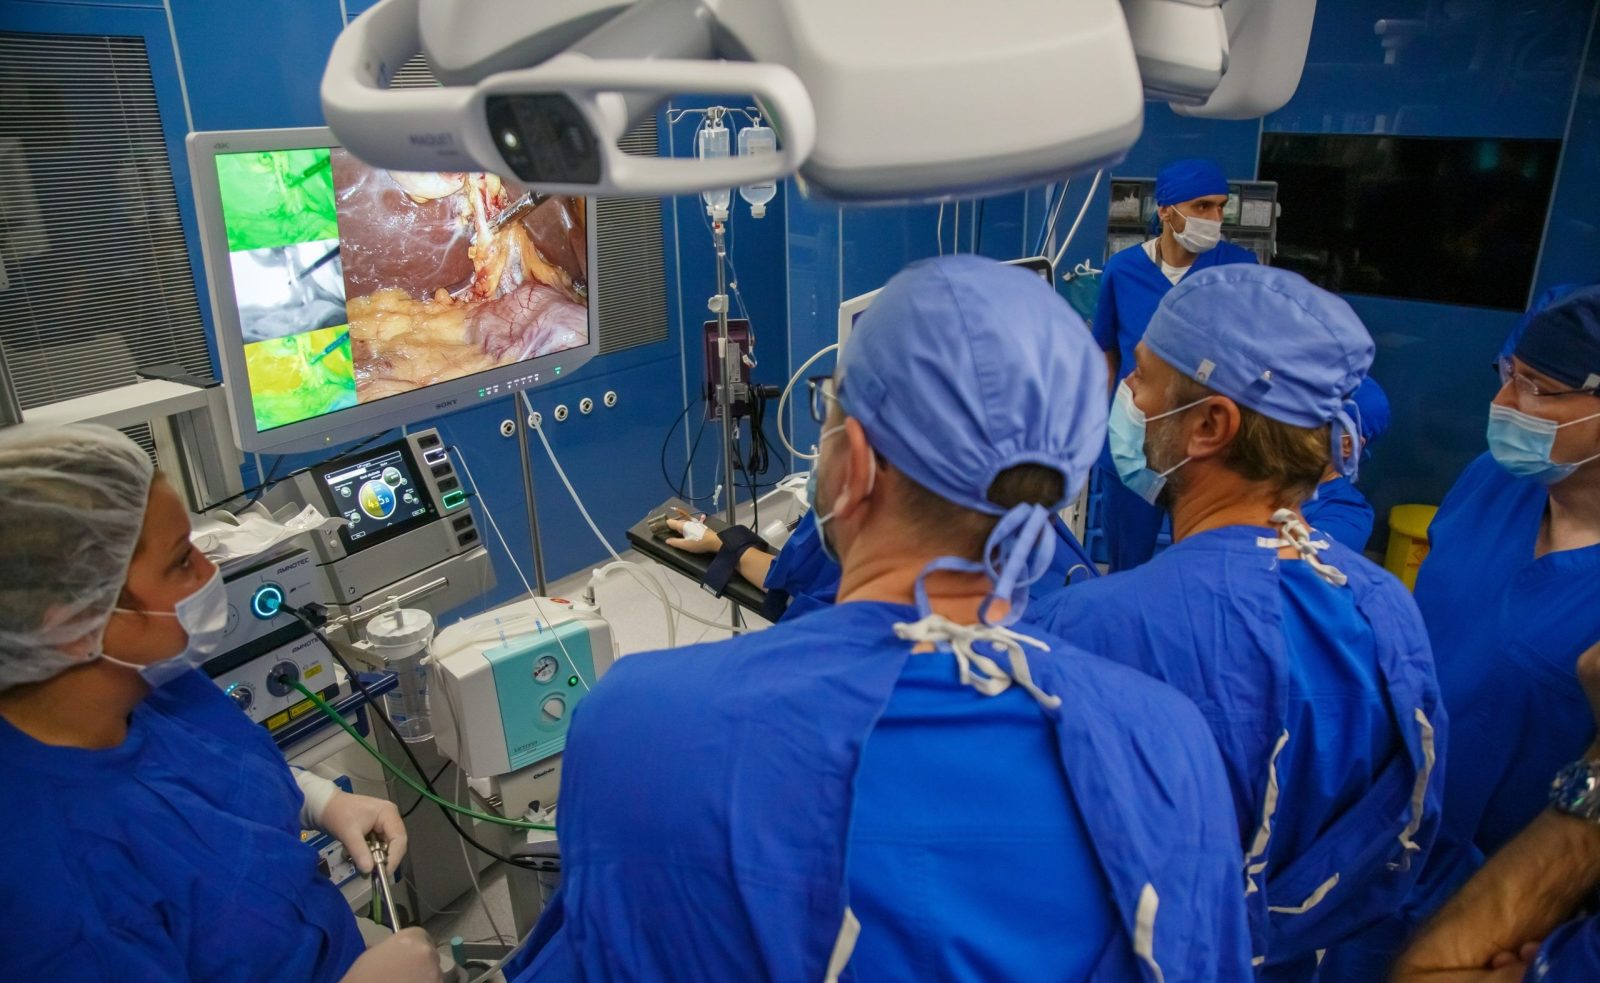 hirurzi koriste Veqtron kameru za endoskopsku i otvorenu hirurgiju u opštoj bolnici New Hospital